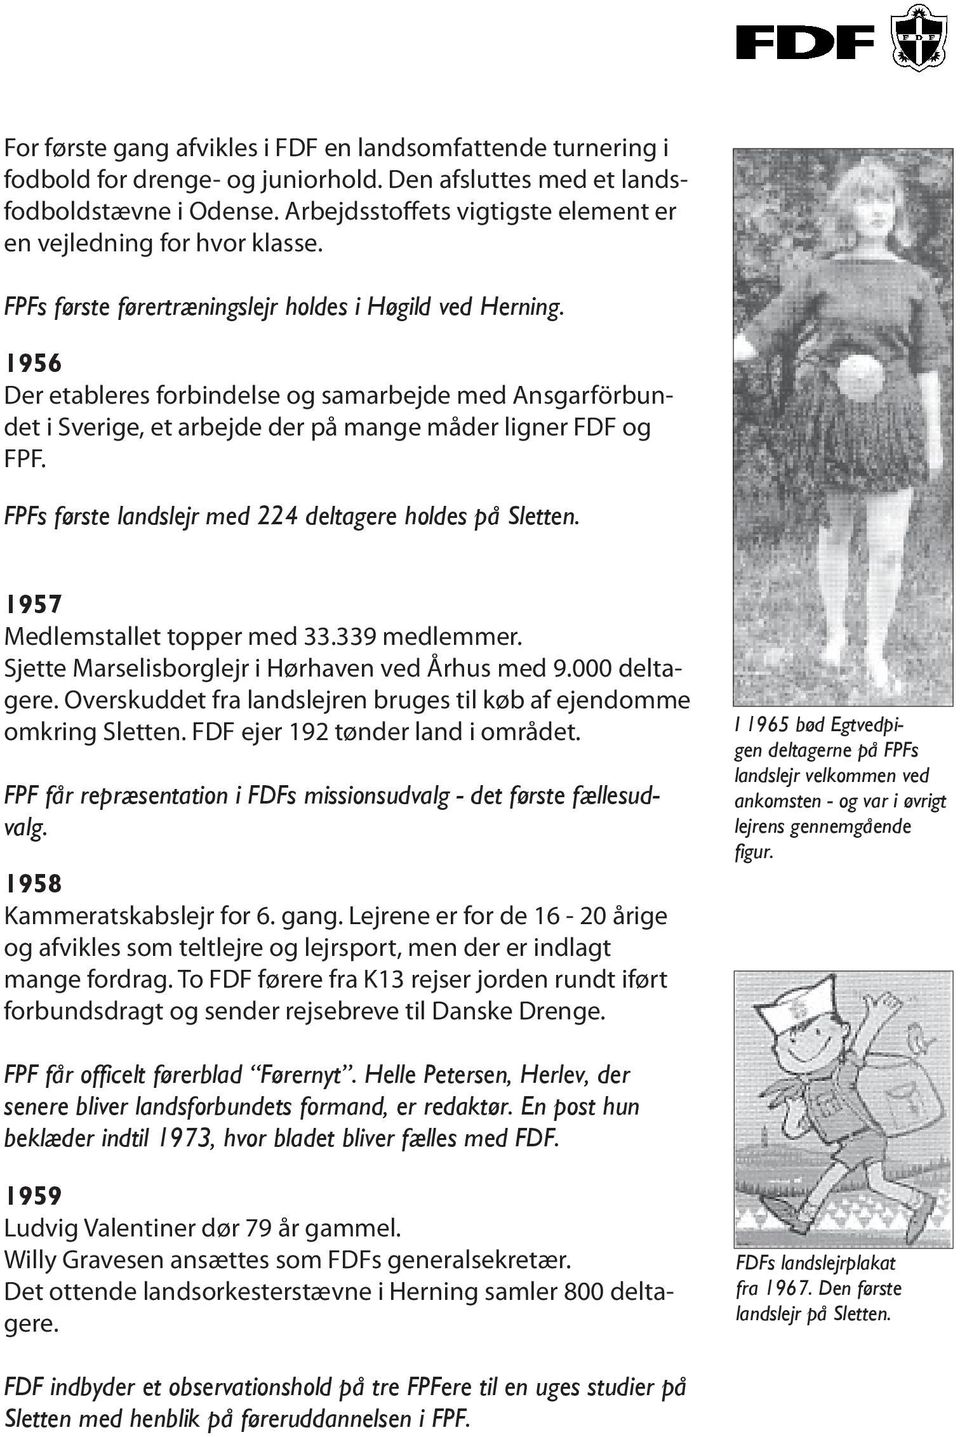 1956 Der etableres forbindelse og samarbejde med Ansgarförbundet i Sverige, et arbejde der på mange måder ligner FDF og FPF. FPFs første landslejr med 224 deltagere holdes på Sletten.